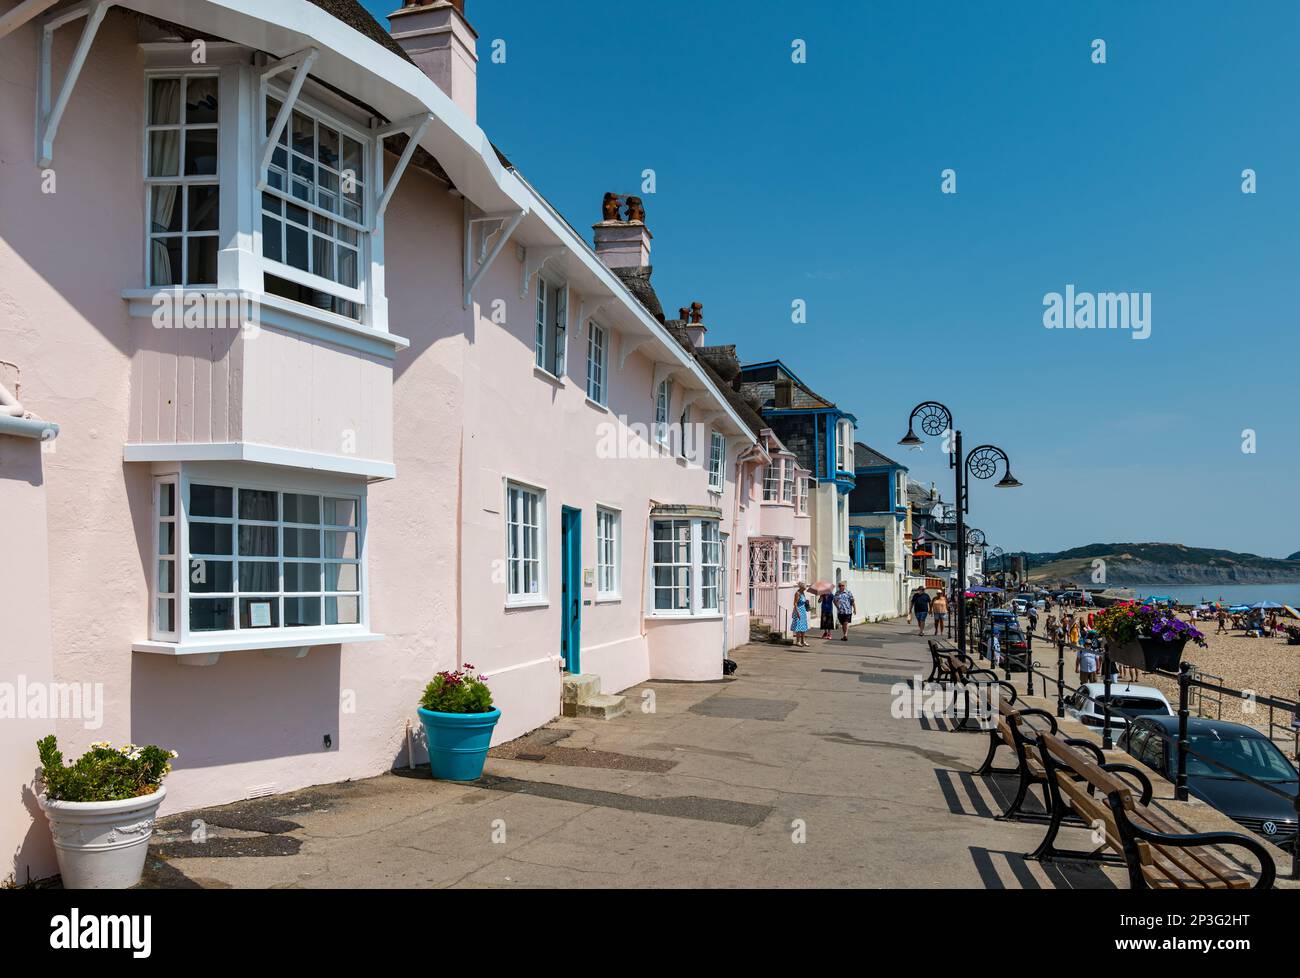 Cottages roses historiques en bord de mer, Marine Parade, Lyme Regis, Dorset, Angleterre, ROYAUME-UNI Banque D'Images